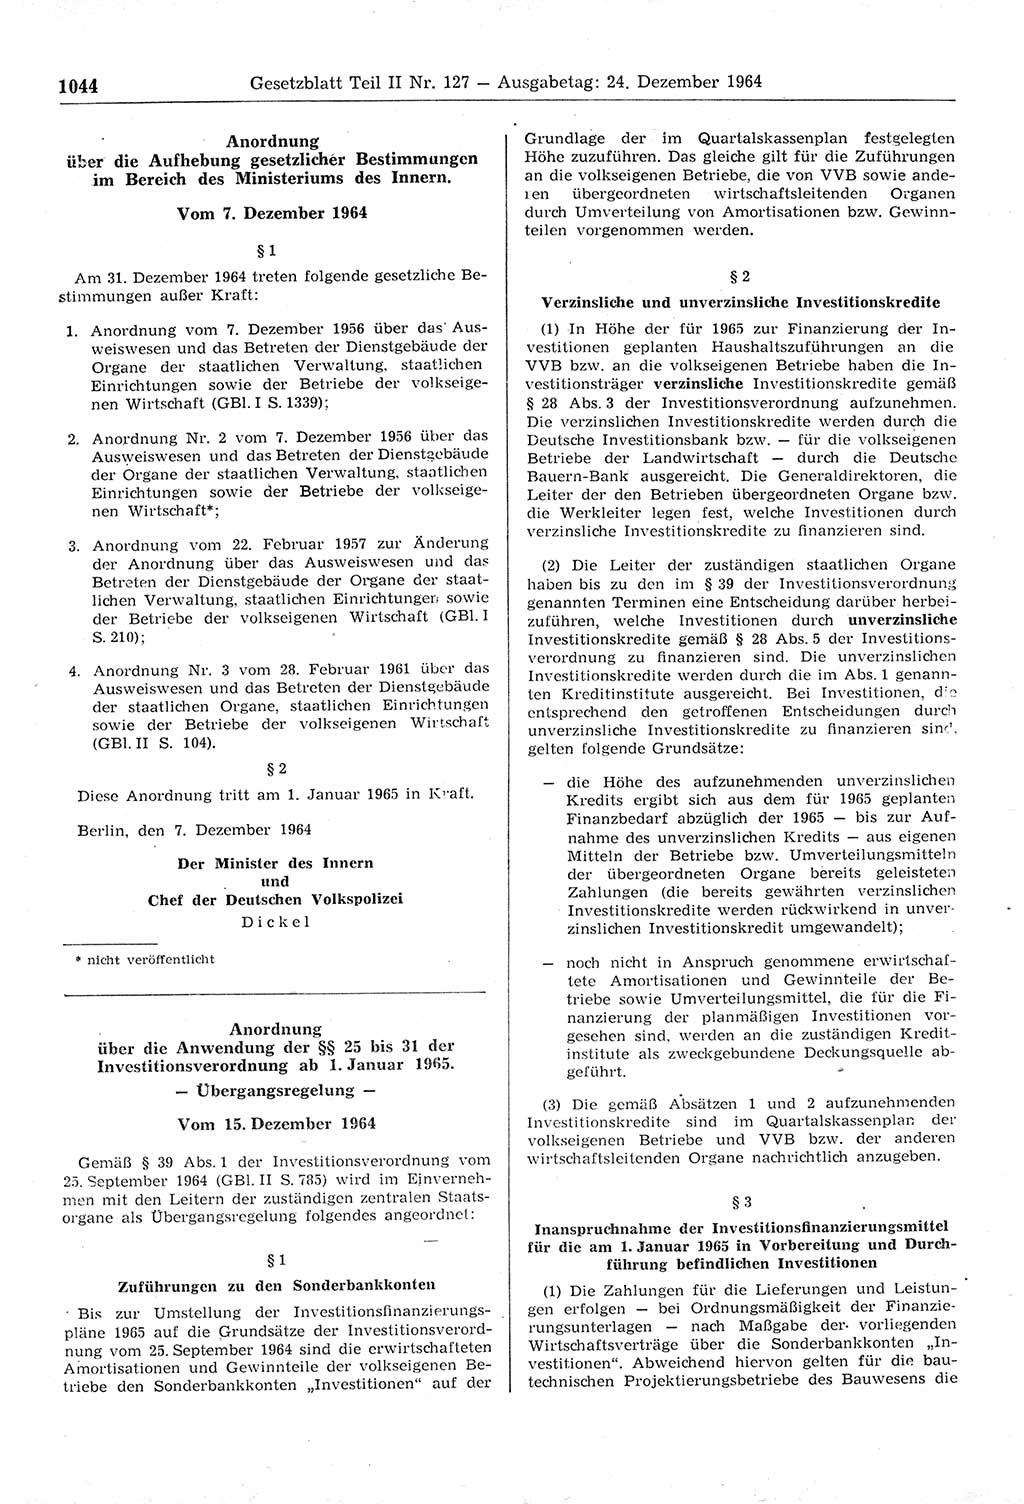 Gesetzblatt (GBl.) der Deutschen Demokratischen Republik (DDR) Teil ⅠⅠ 1964, Seite 1044 (GBl. DDR ⅠⅠ 1964, S. 1044)